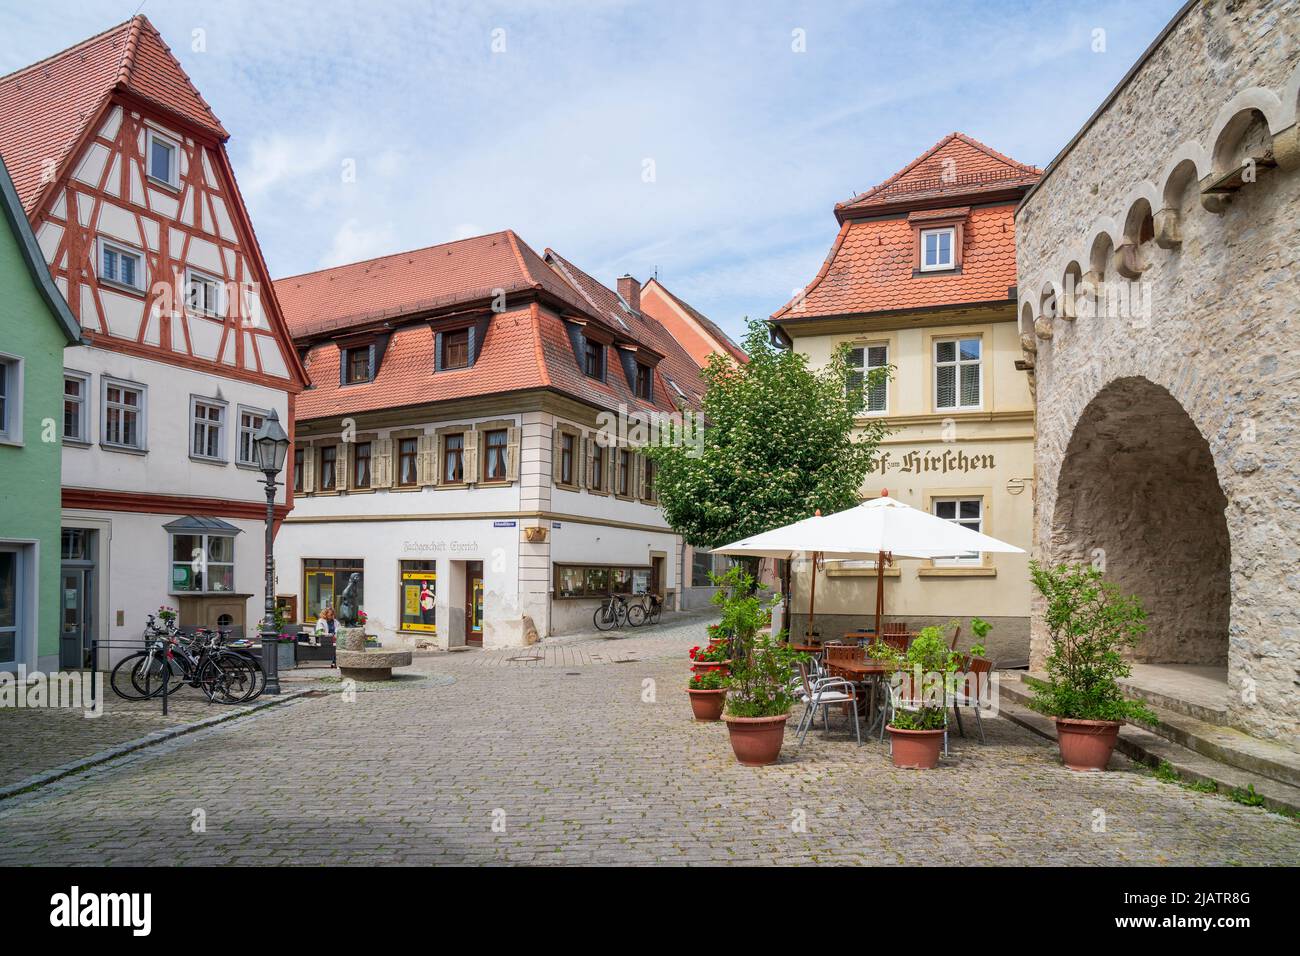 Die historische Altstadt von Dettelbach am Main in Unterfranken mit malerischen Gebäuden innerhalb der Stadtmauer Stock Photo